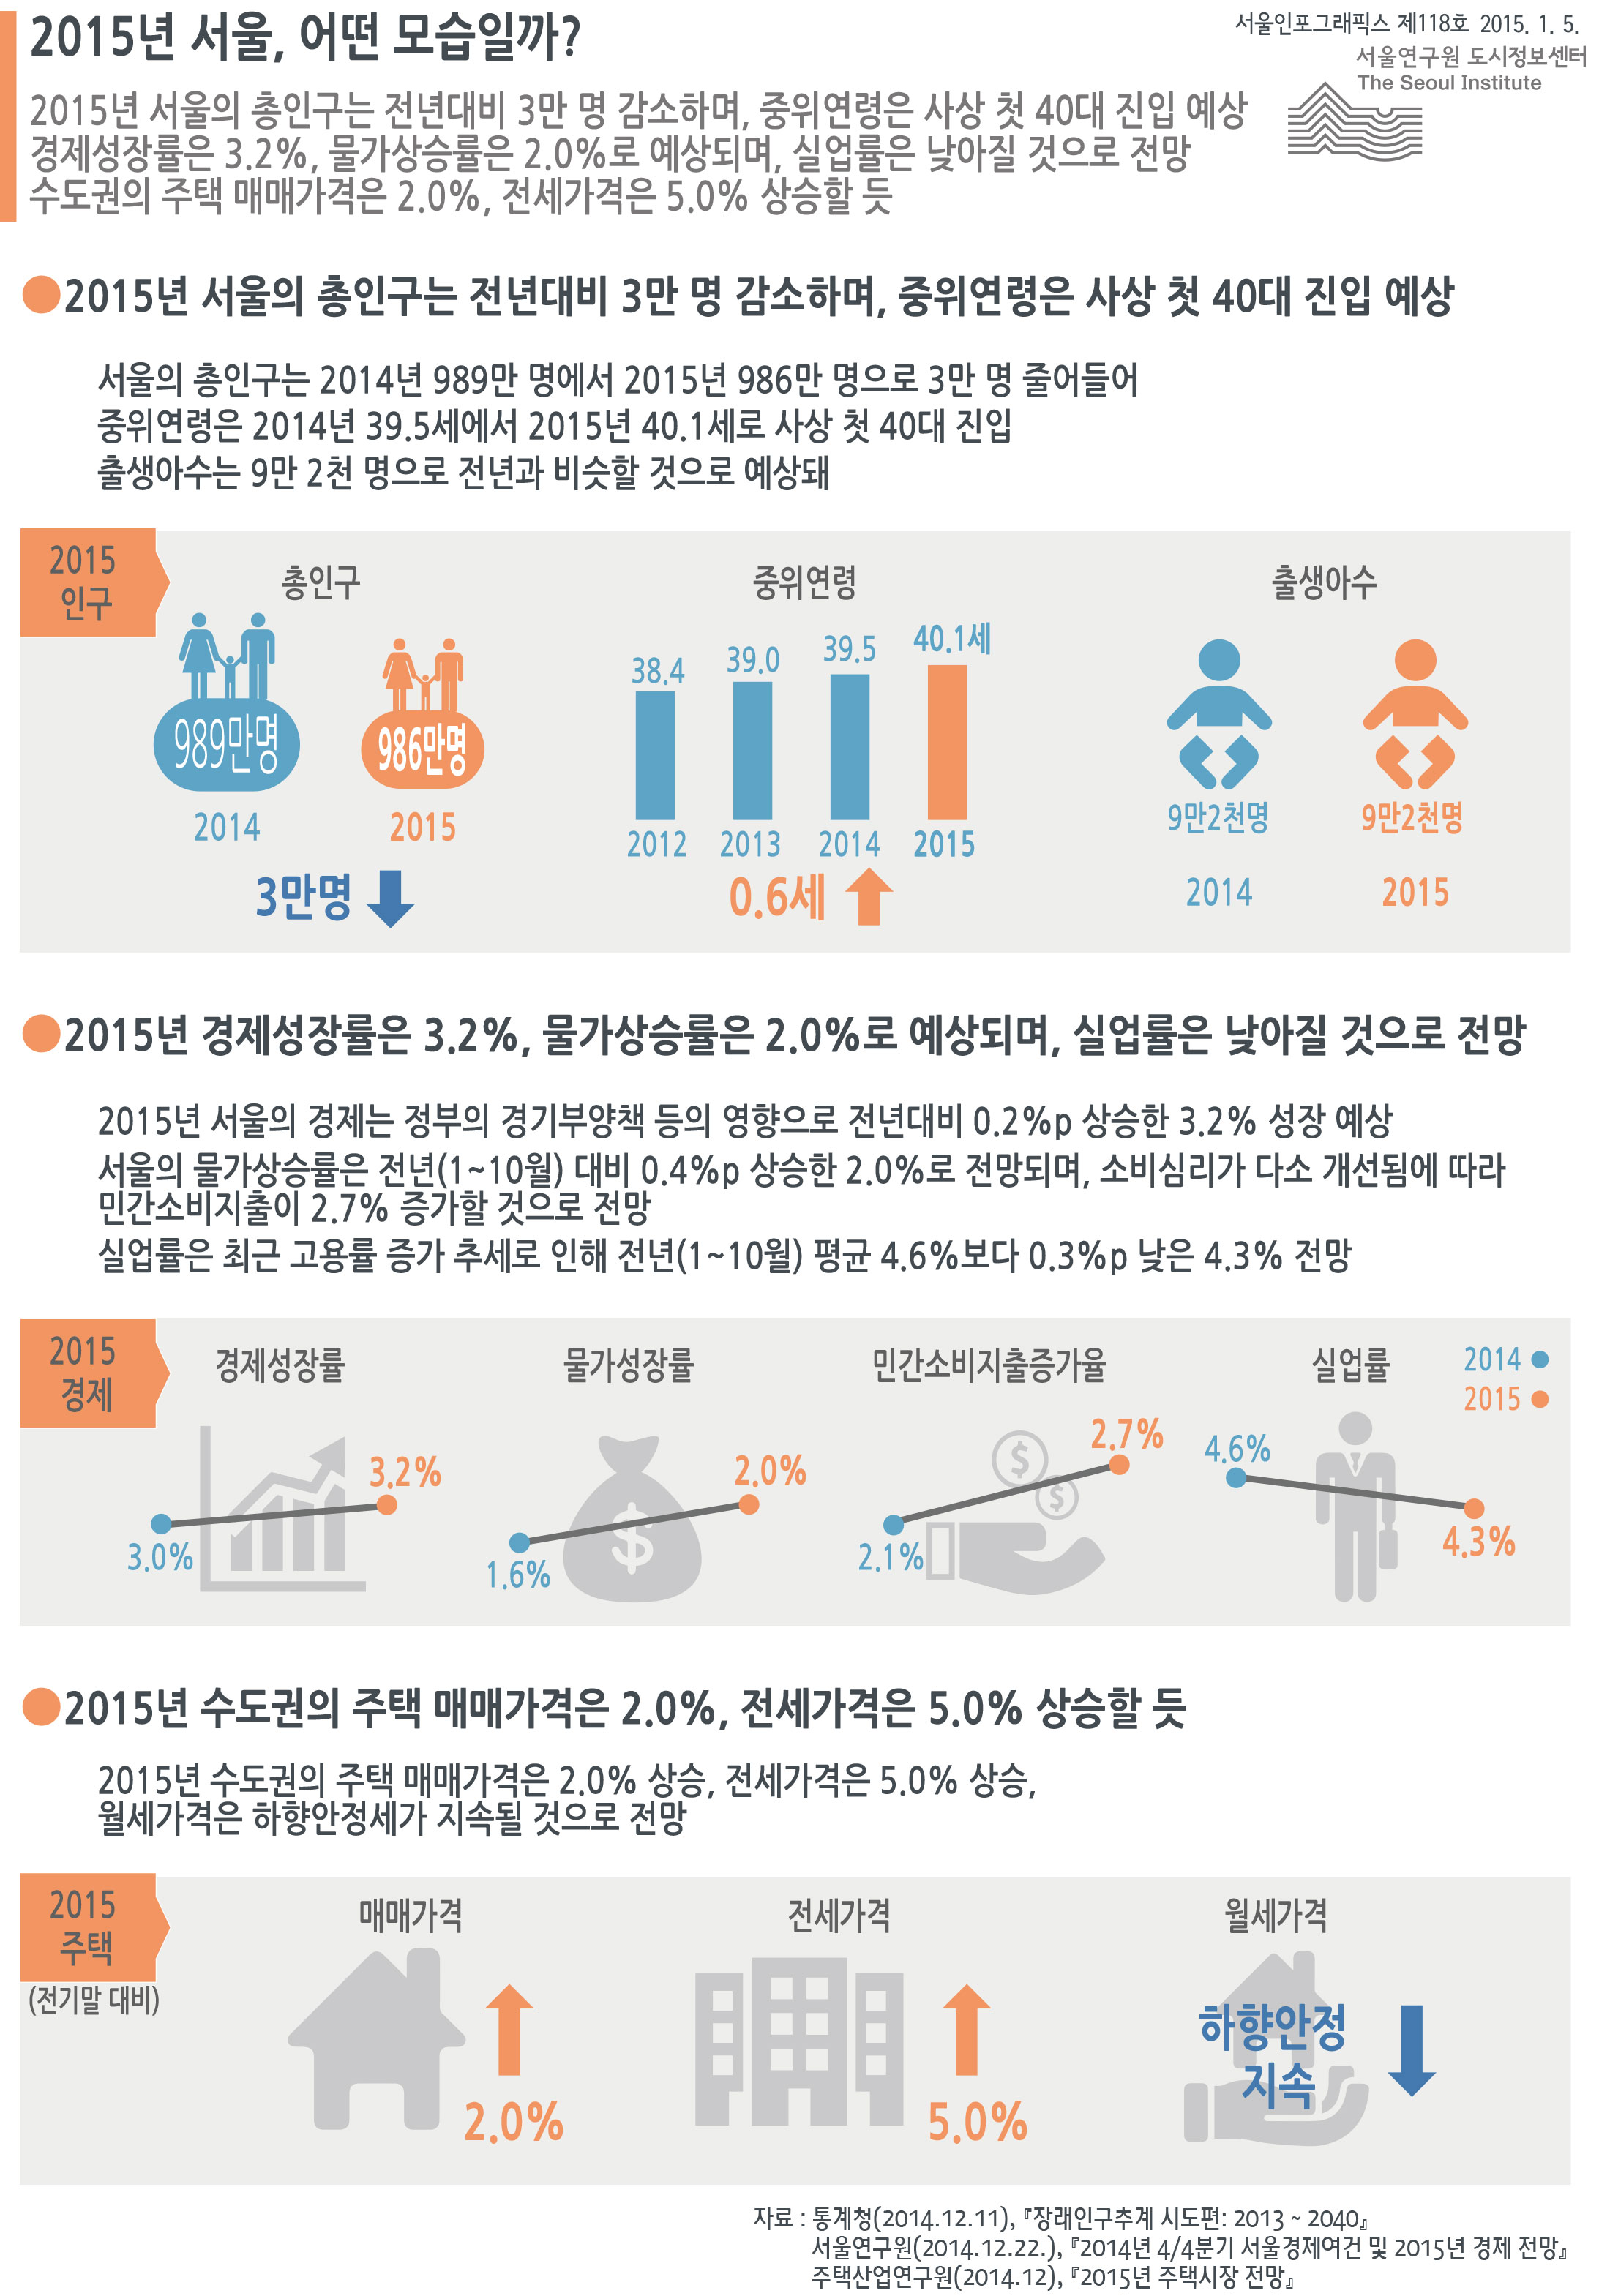 2015년 서울, 어떤 모습일까? 서울인포그래픽스 제118호 2015년 1월 5일 2015년 서울의 총인구는 전년대비 3만 명 감소하며, 중위연령은 사상 첫 40대 진입 예상 경제성장률은 3.2%, 물가상승률은 2.0%로 예상되며, 실업률은 낮아질 것으로 전망. 수도권의 주택 매매가격은 2.0%, 전세가격은 5.0% 상승할 전망으로 정리될 수 있습니다. 인포그래픽으로 제공되는 그래픽은 하단에 표로 자세히 제공됩니다.